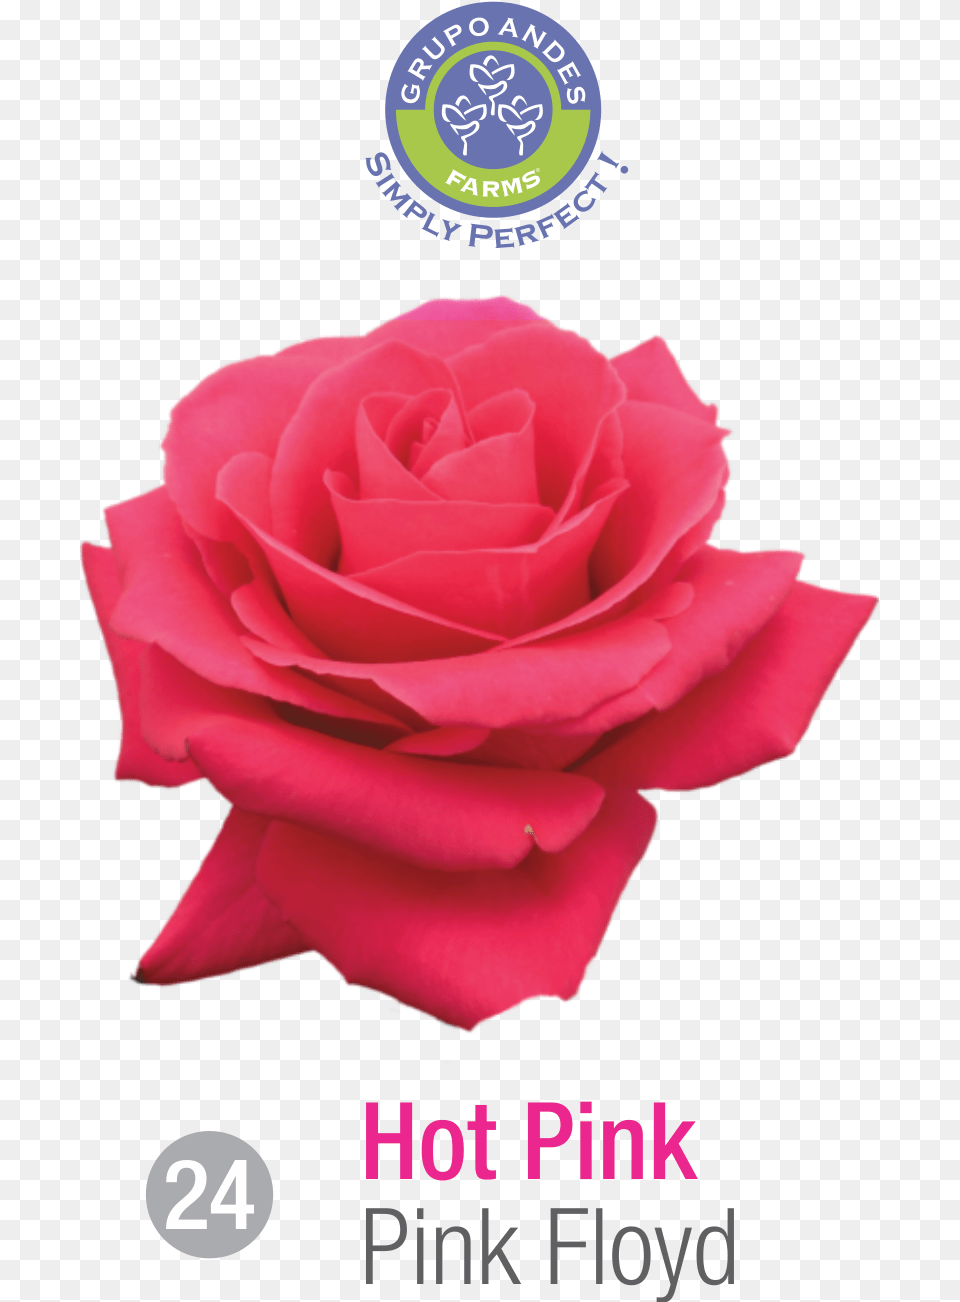 Rosa Variedad Pink Floyd Garden Roses, Flower, Petal, Plant, Rose Free Transparent Png